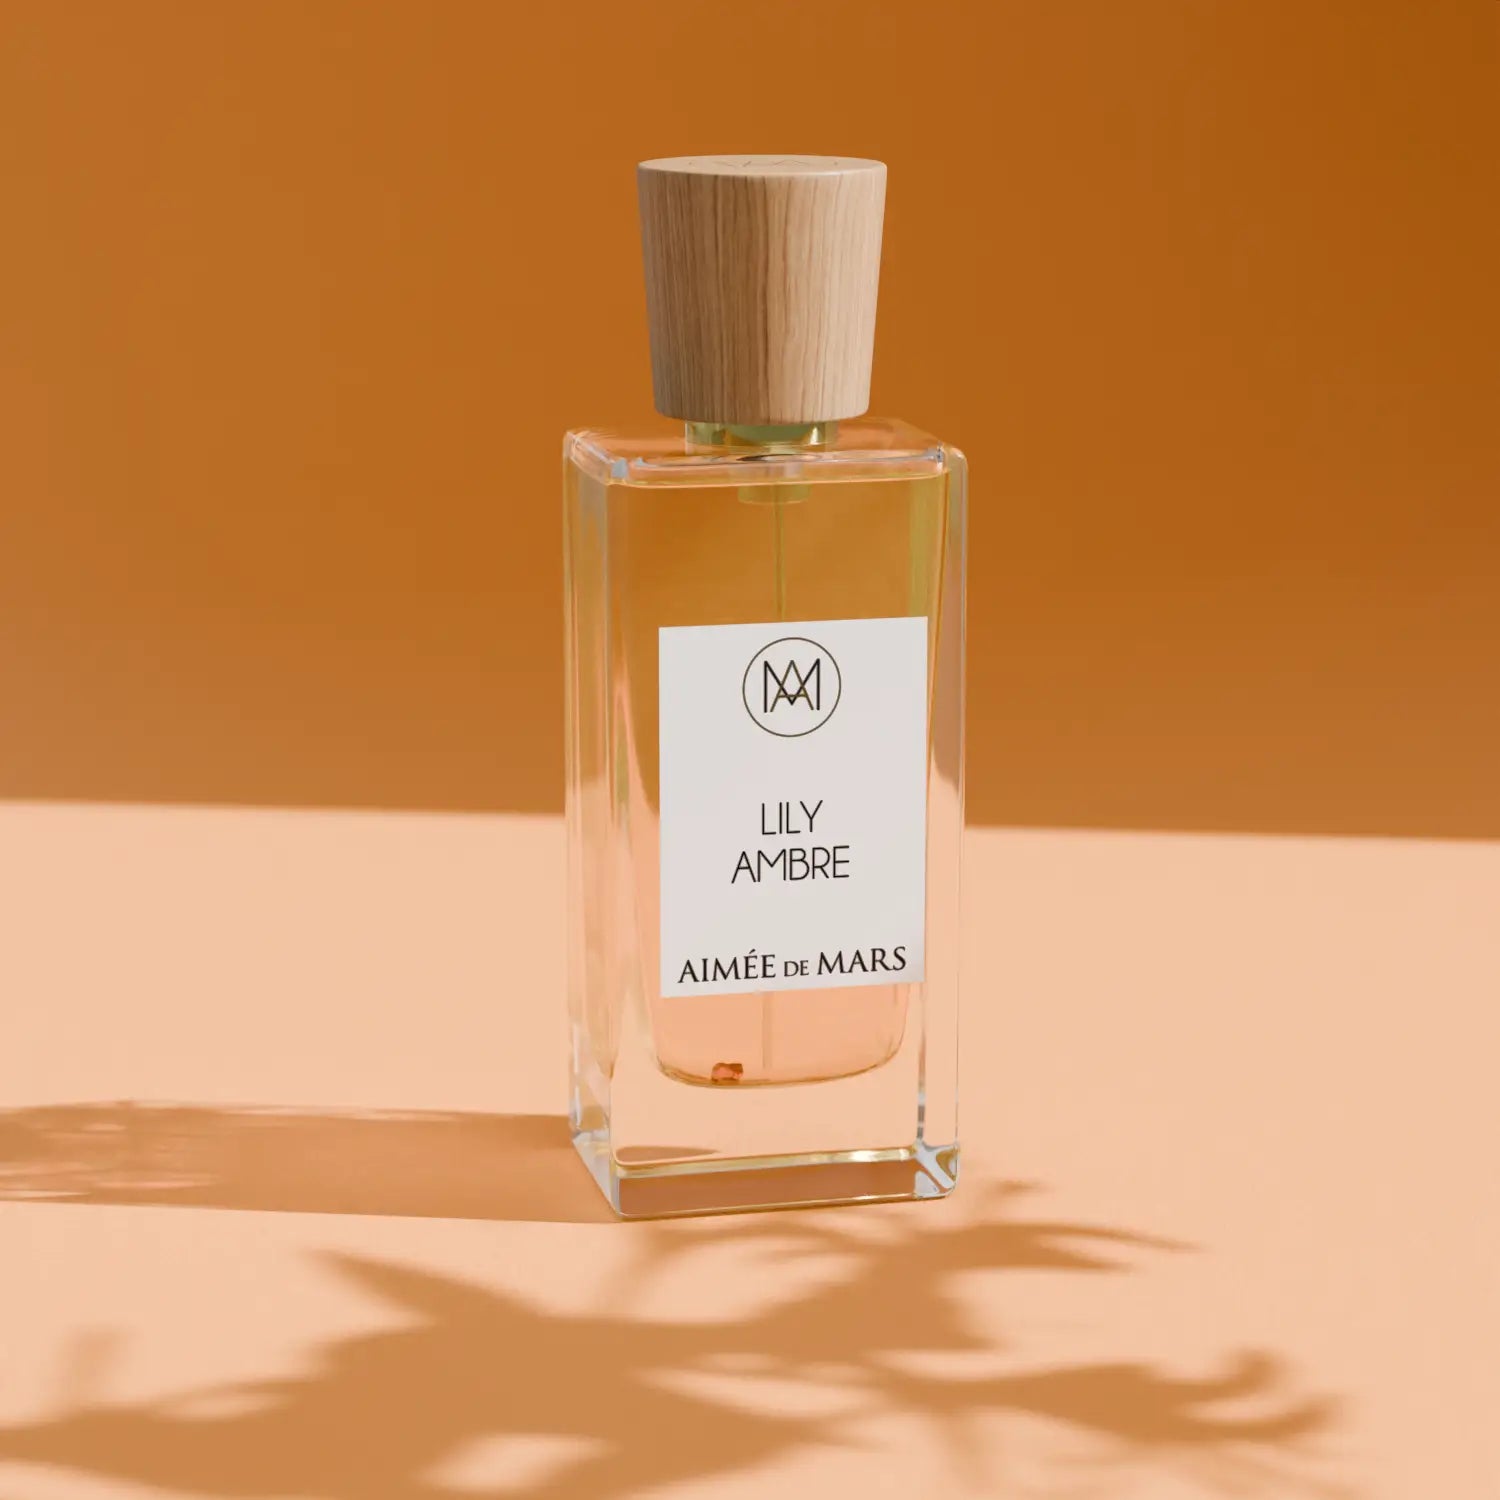 Lily Ambre fragrance elixir